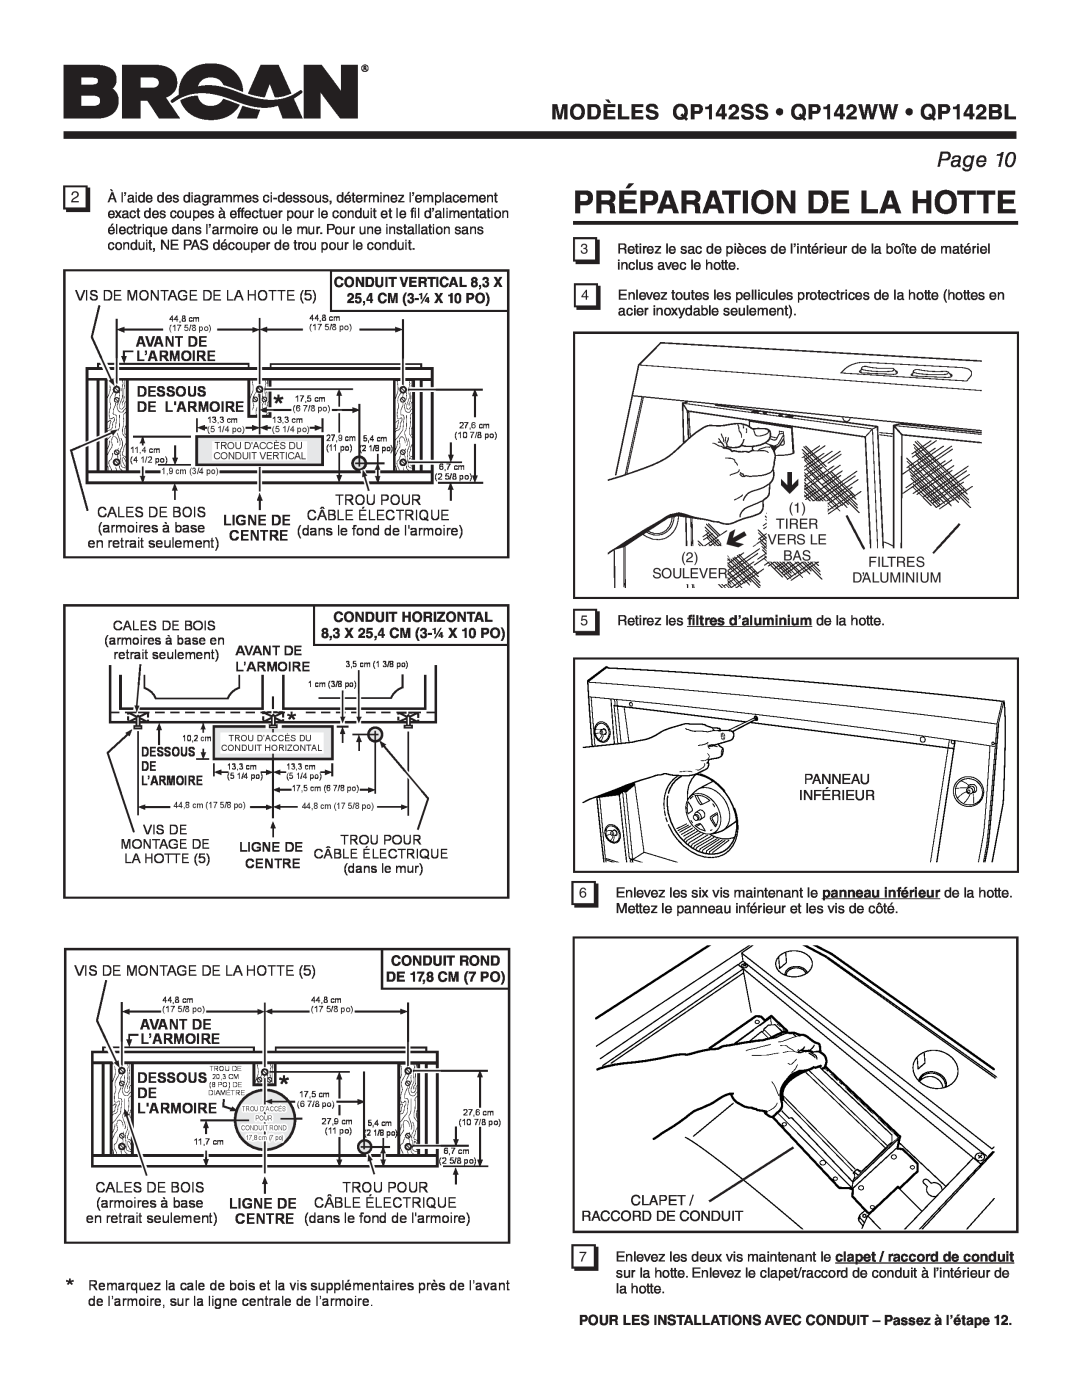 Broan manual Préparation De La Hotte, MODÈLES QP142SS QP142WW QP142BL, Page 